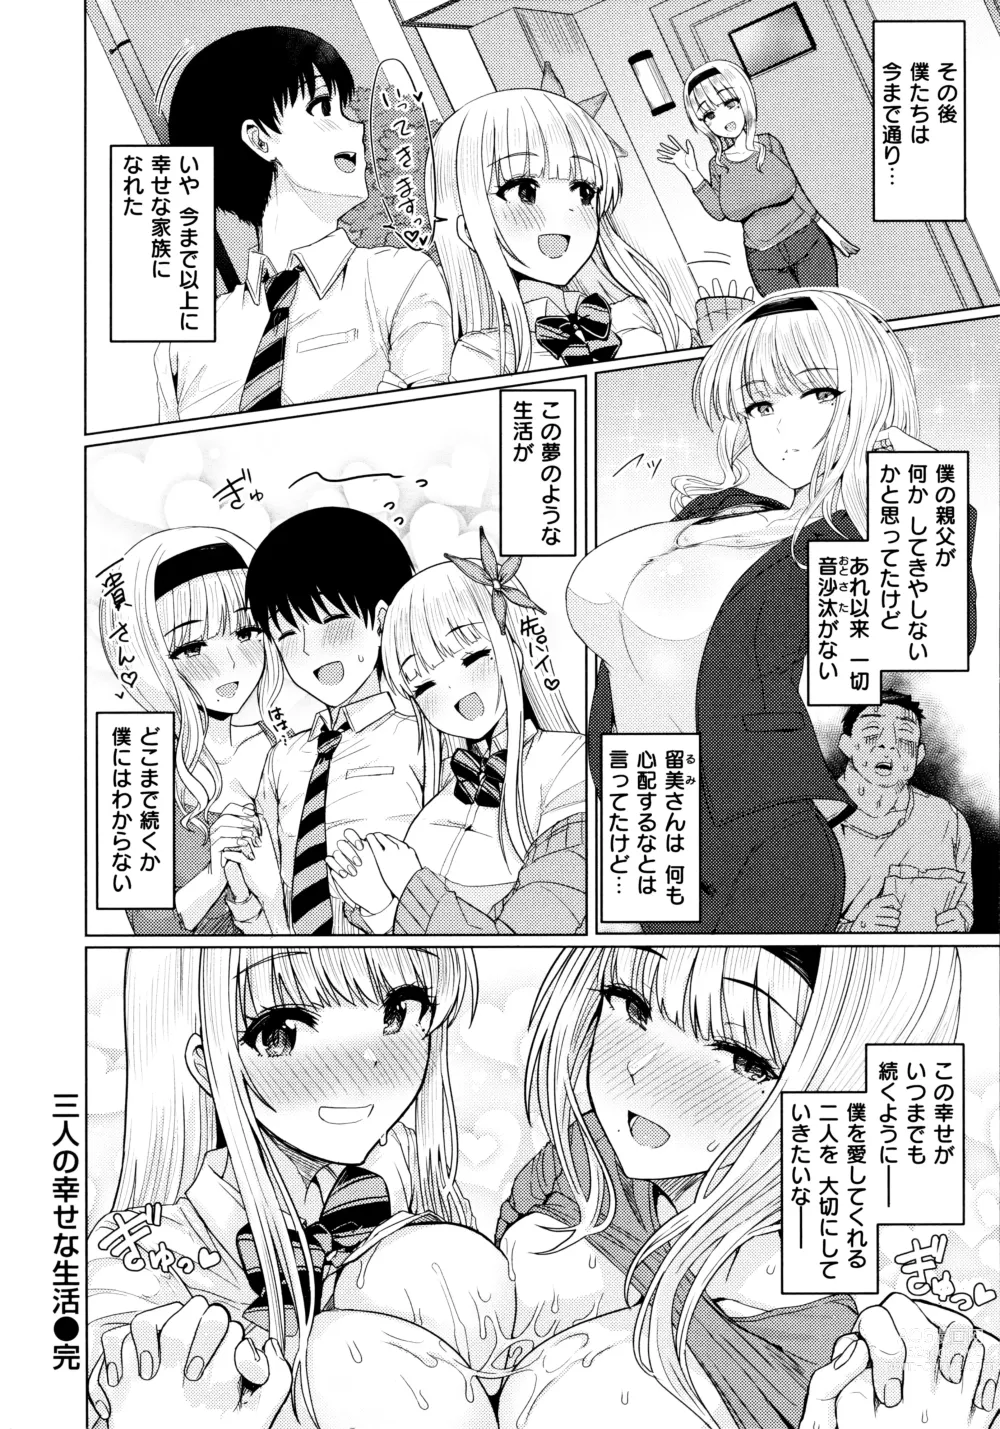 Page 20 of manga Nukunuku Seikatsu - Life Full of Sex + Melonbooks Kounyu Tokuten + Toranoana Kounyu Tokuten